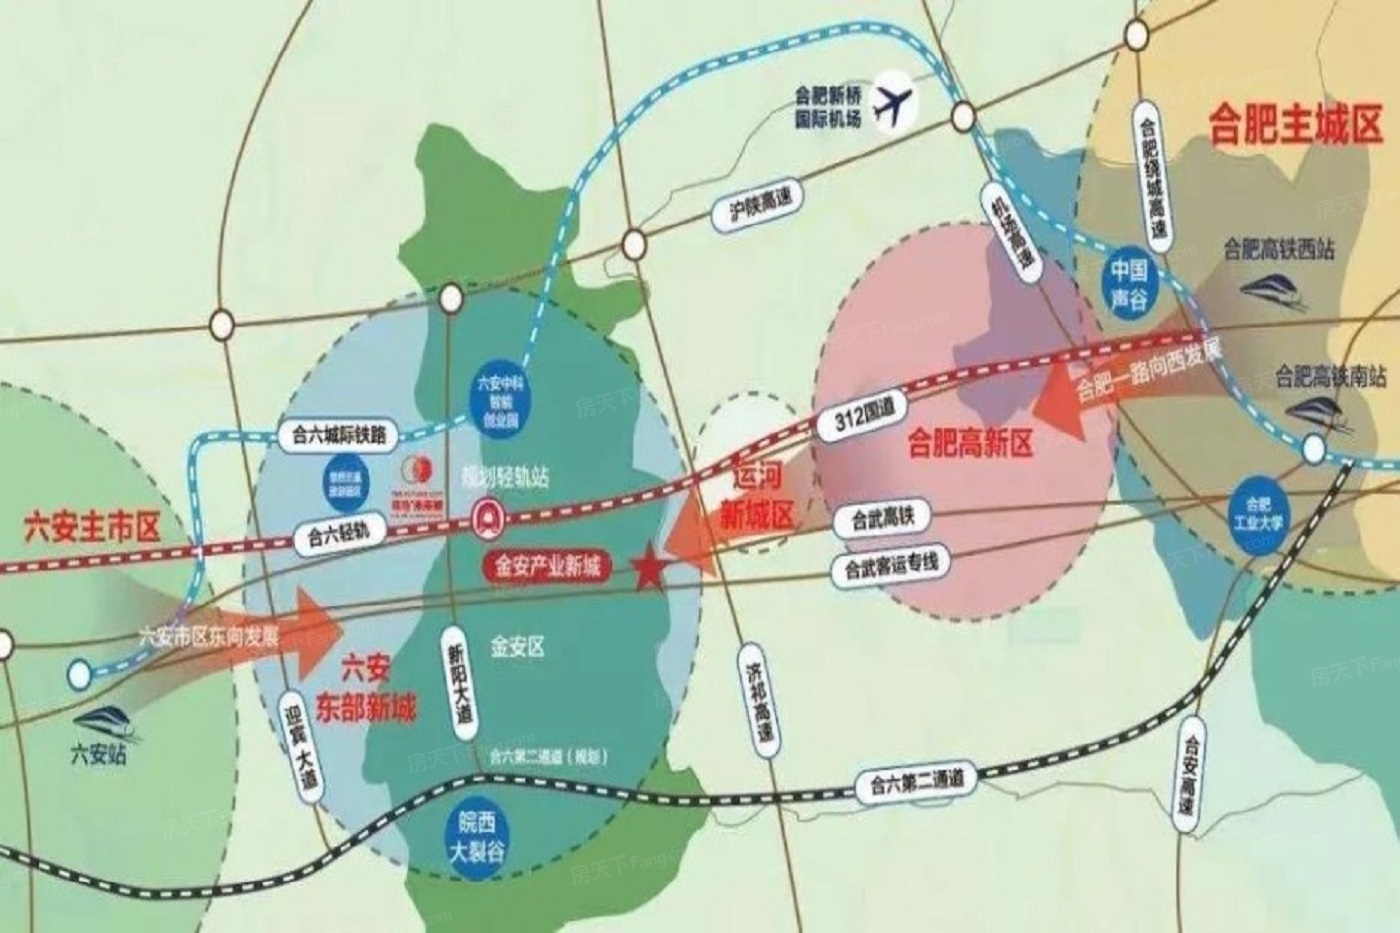 计划s2合六轻轨(预计今年开建),合六城际铁路(规划中)以及金安